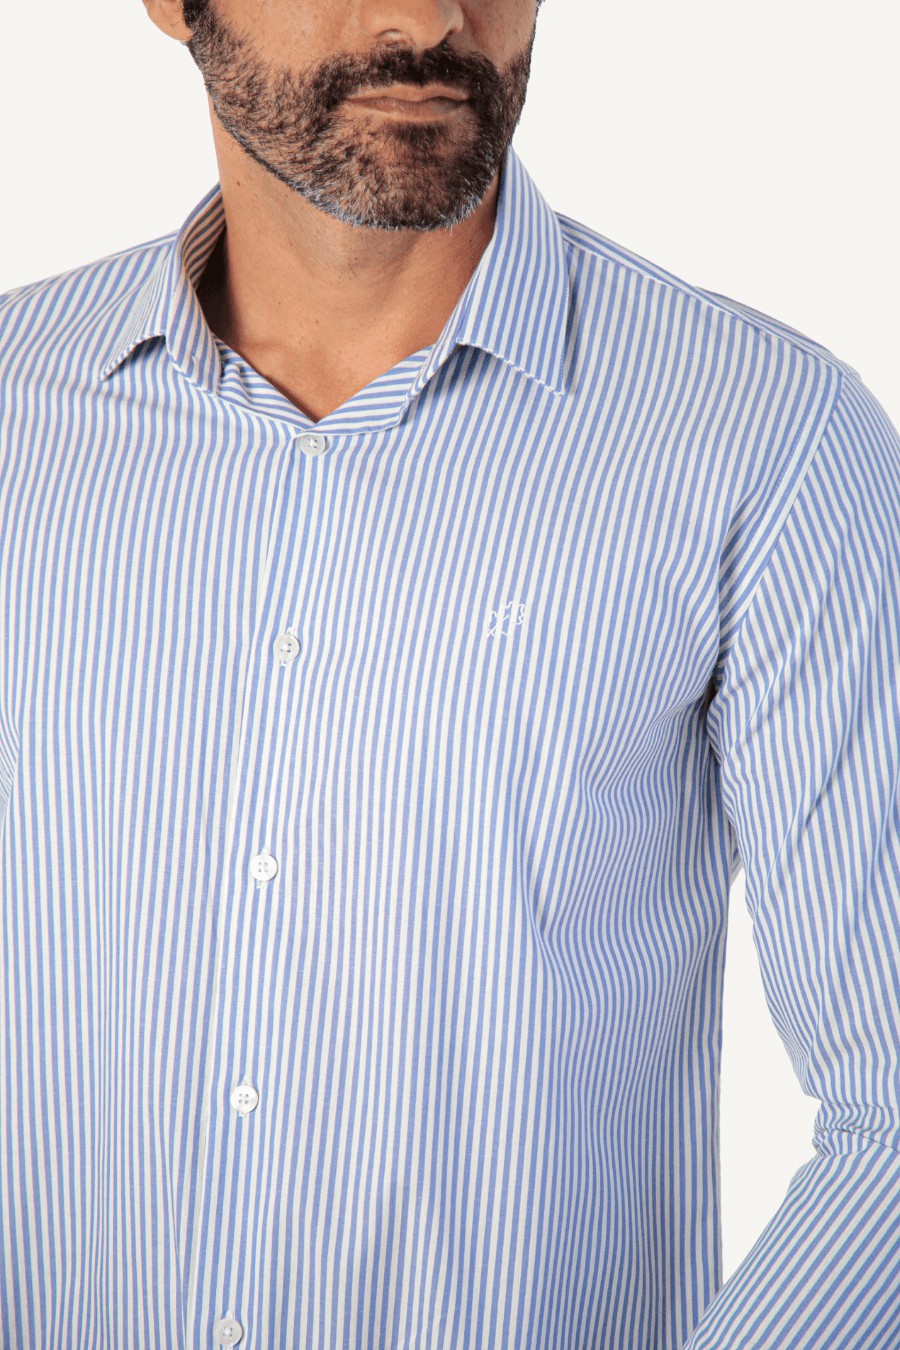 Camisa Social Slim Fit Listrada Azul e Branco | Oak Empire - OAK EMPIRE